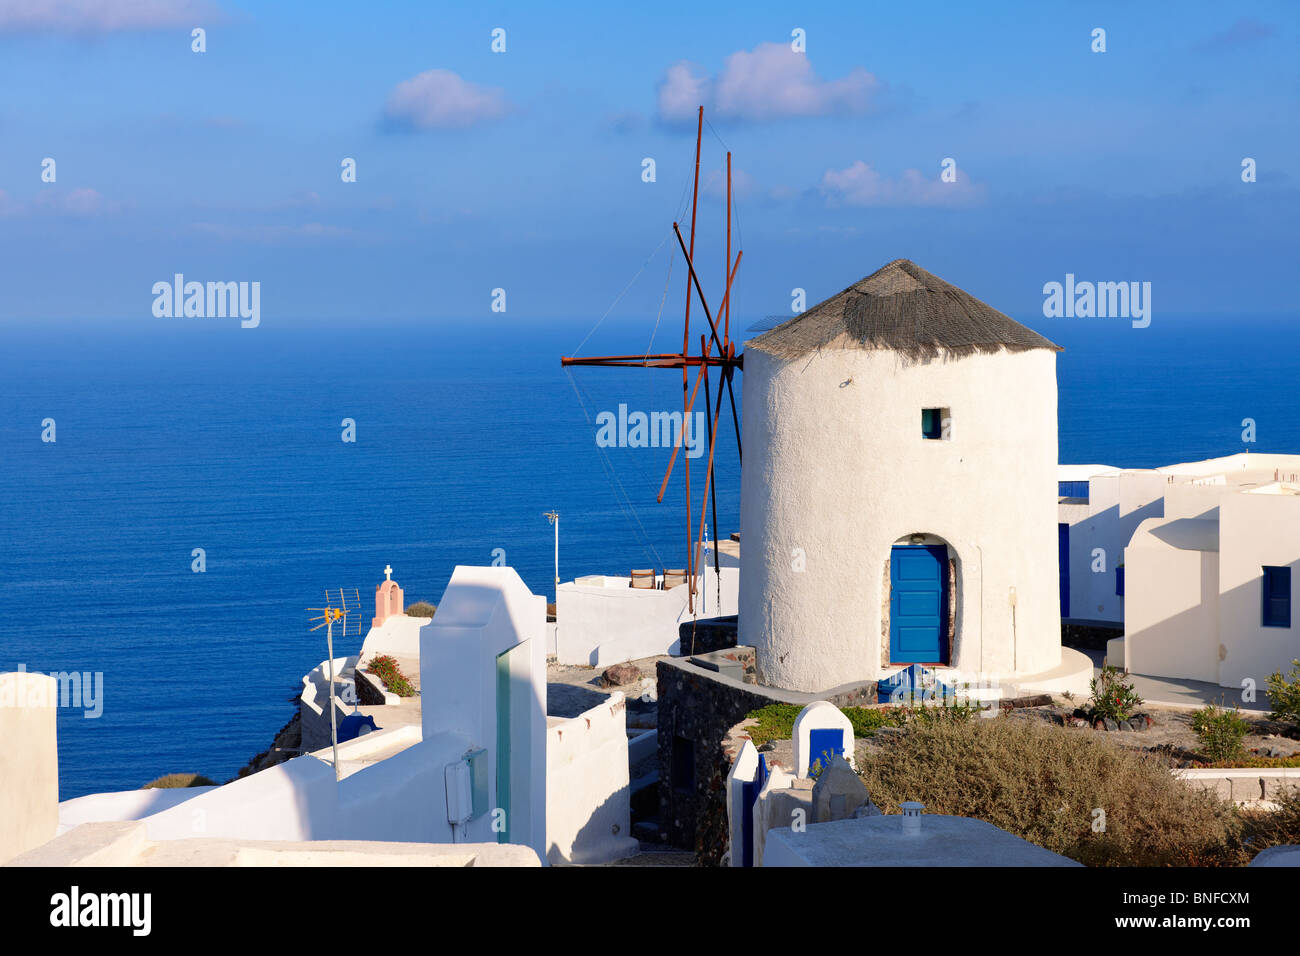 Oia (Ia) Santorini - Windmühlen griechischen Kykladen-Inseln - Fotos, Bilder und Grafiken Stockfoto